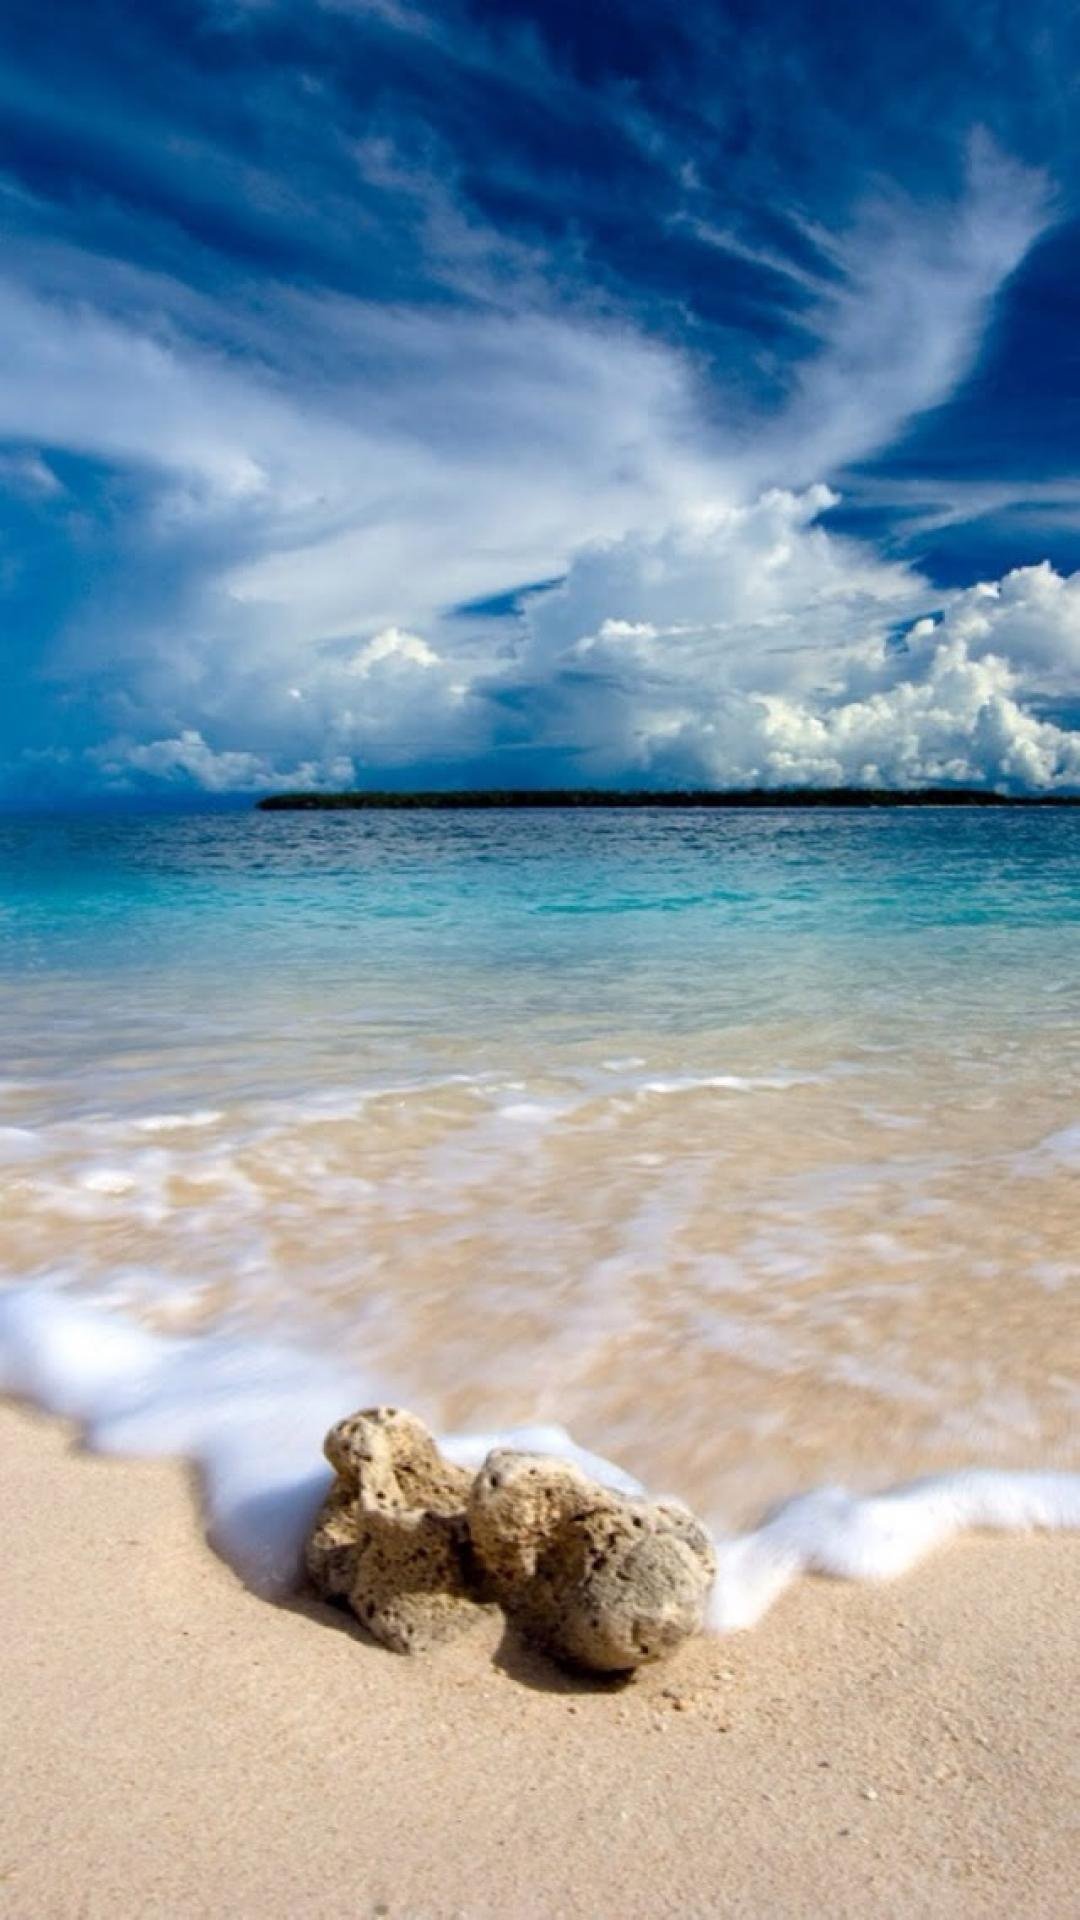 金色的绵软沙滩与蓝天白云形成秀丽风景